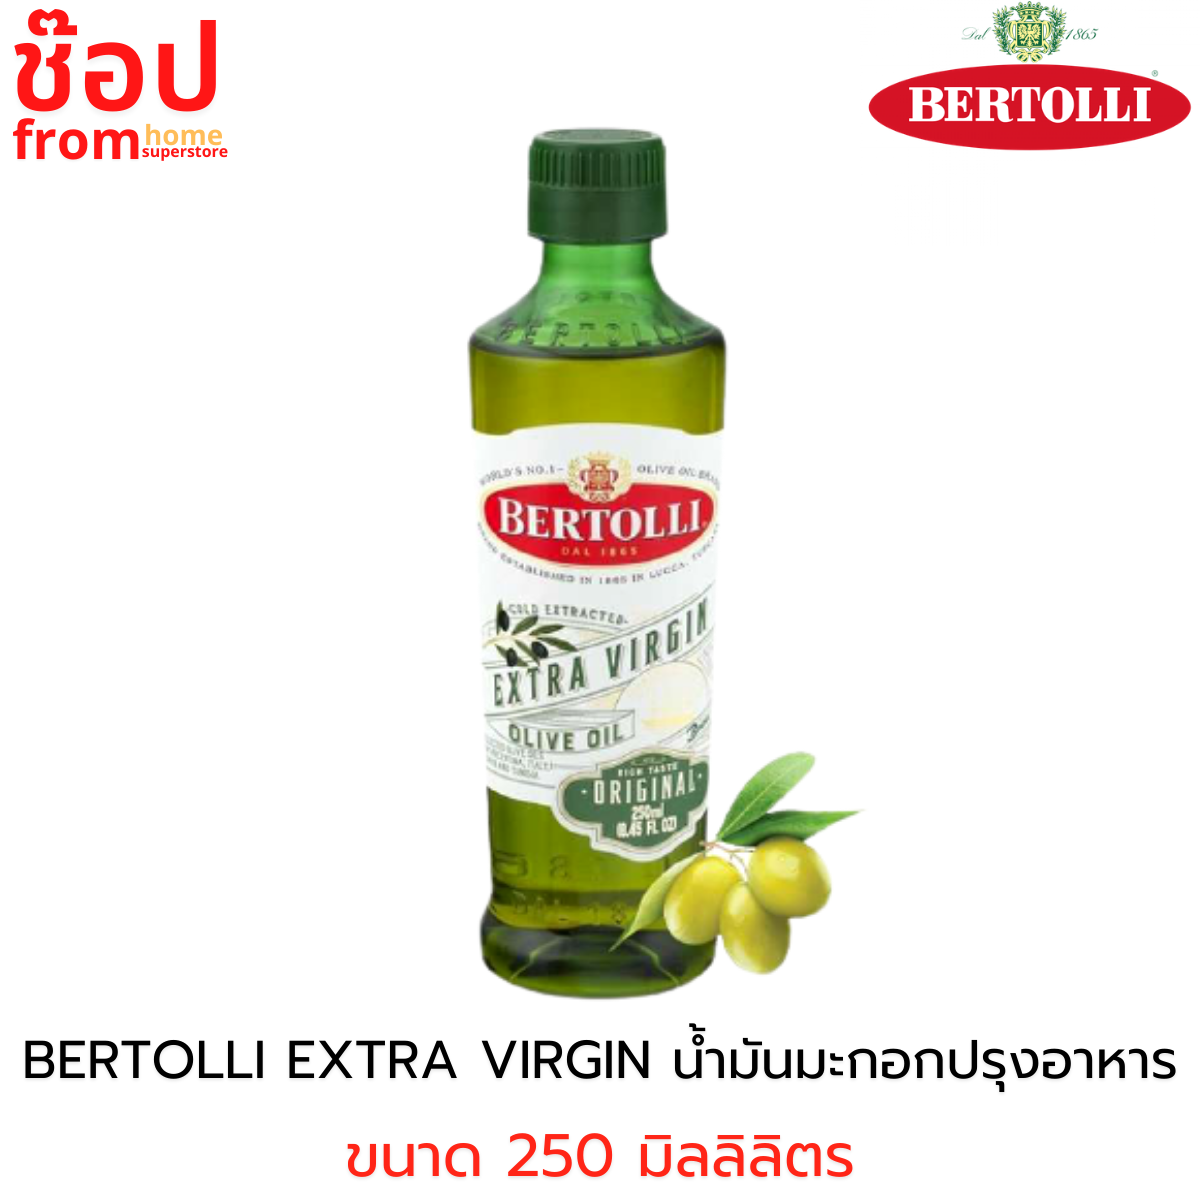 Bertolli Extra Virgin Olive Oil เบอร์ทอลลี่ เอ็กซ์ตร้า เวอร์จิ้น น้ำมันมะกอก (น้ำมันธรรมชาติ) ขนาด 250 มล. น้ำมันมะกอก โดยธรรมชาติ น้ำมันมะกอกกิน